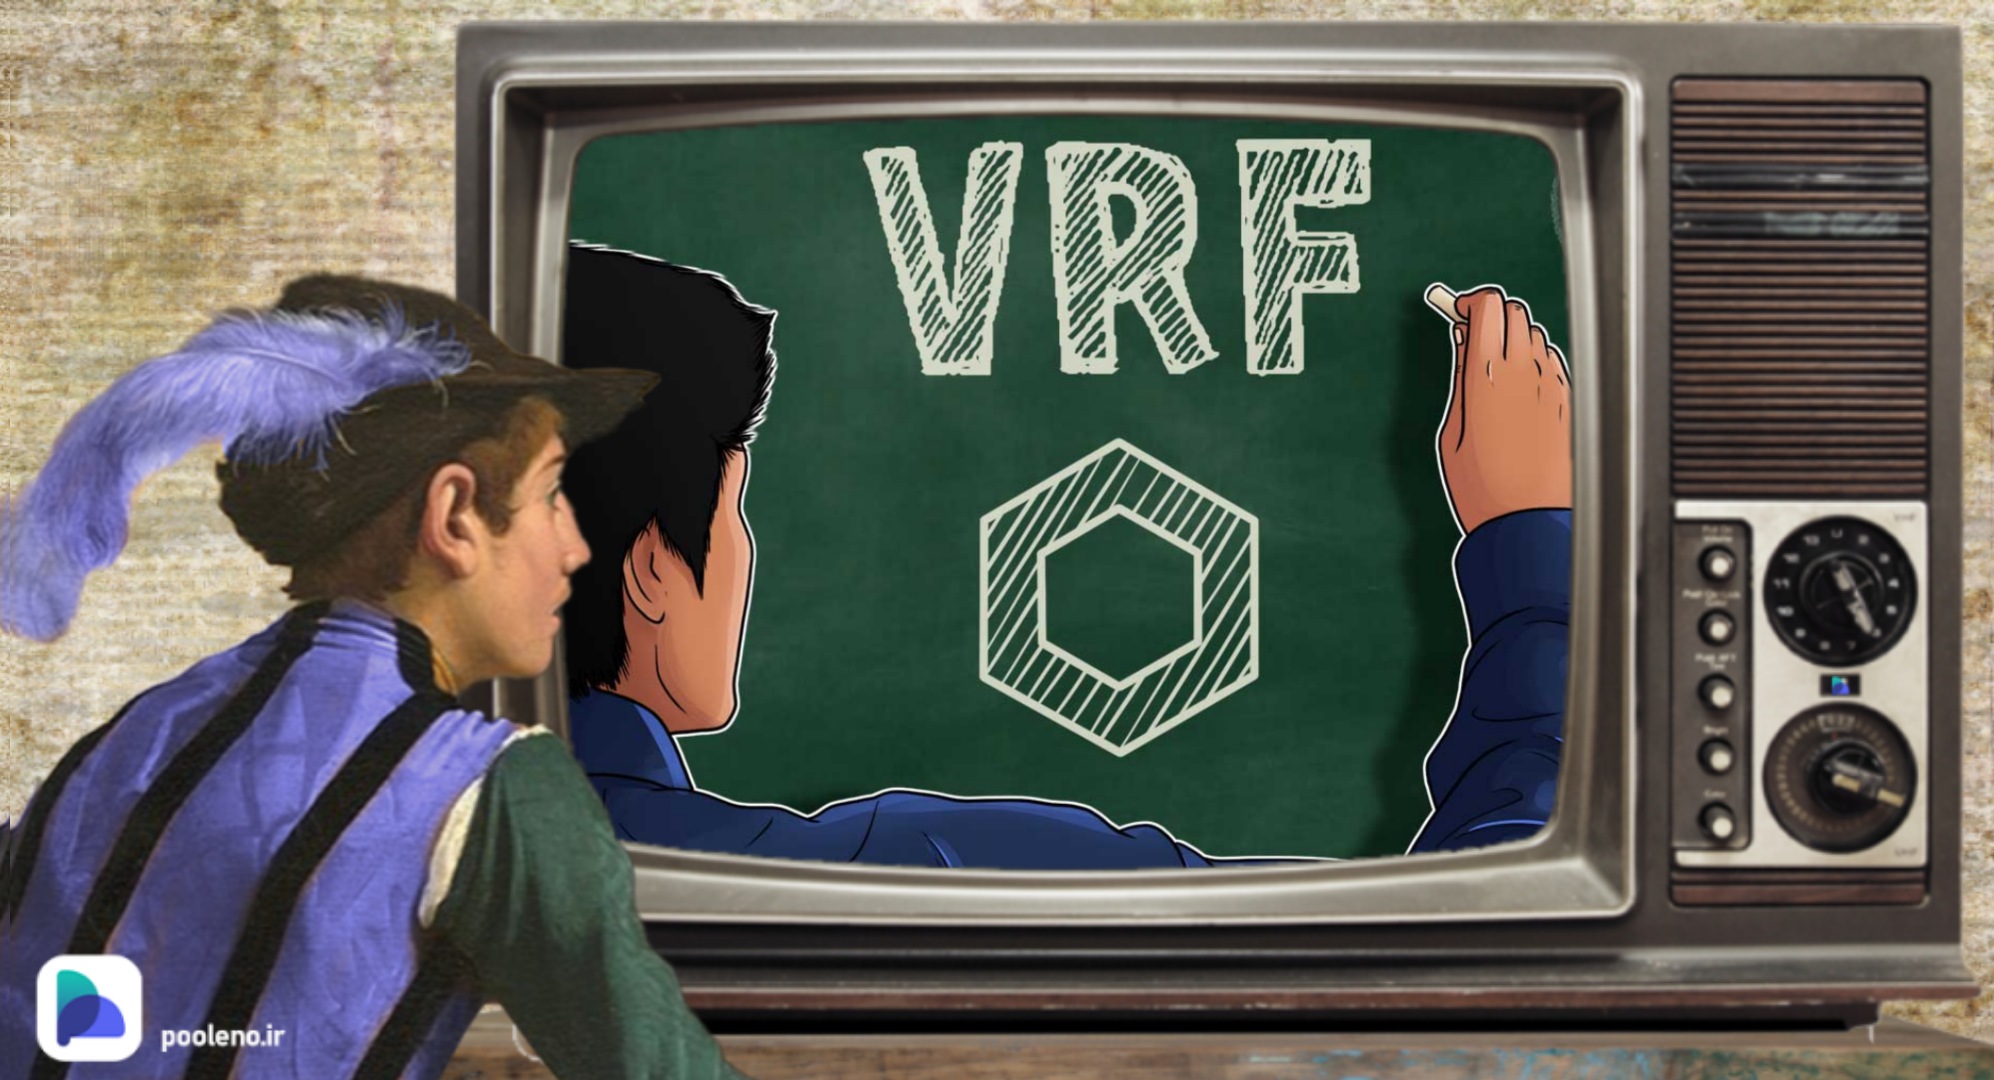 فعالسازی VRF چین لینک در شبکه آربیتروم